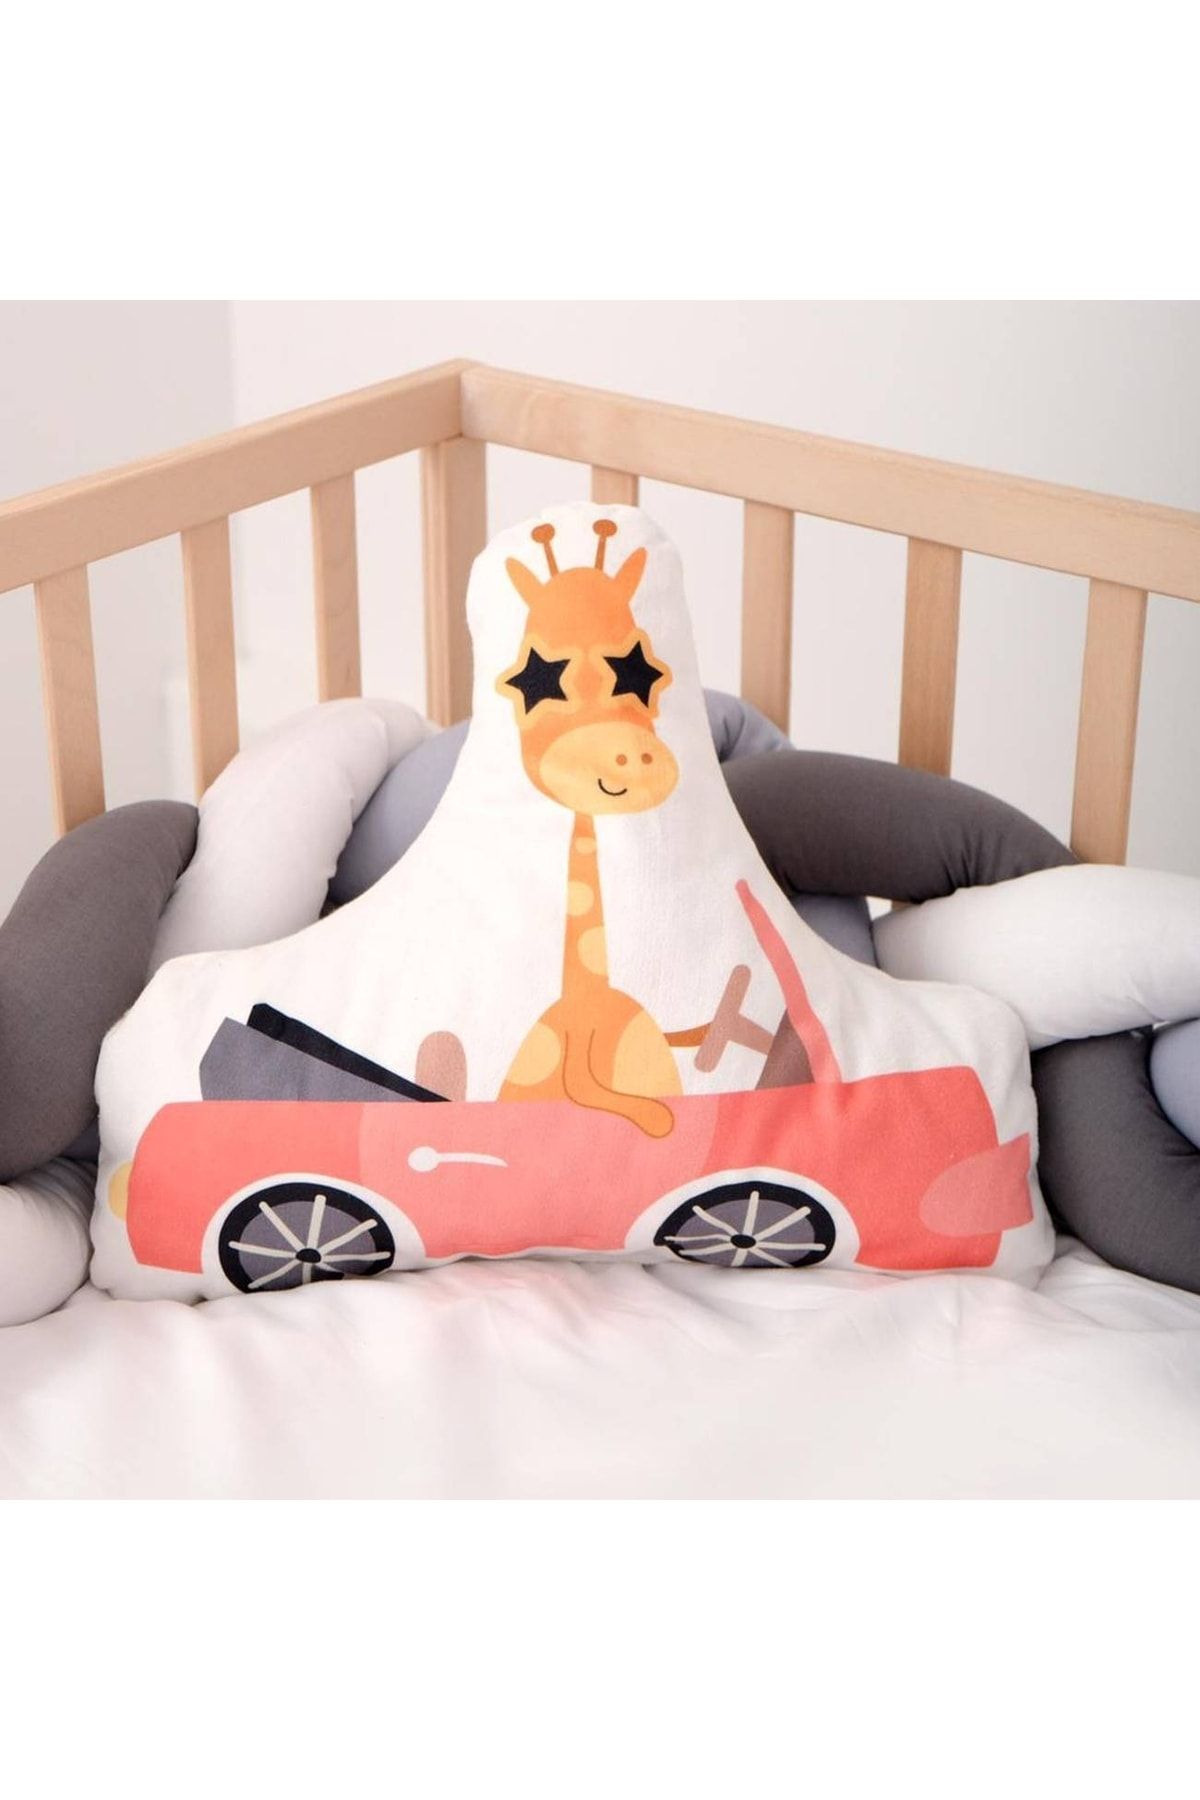 HET Concept Kırmızı Arabalı Zürafa Bebek Çocuk Odası Uyku Arkadaşı Peluş Oyuncaklar Model 089